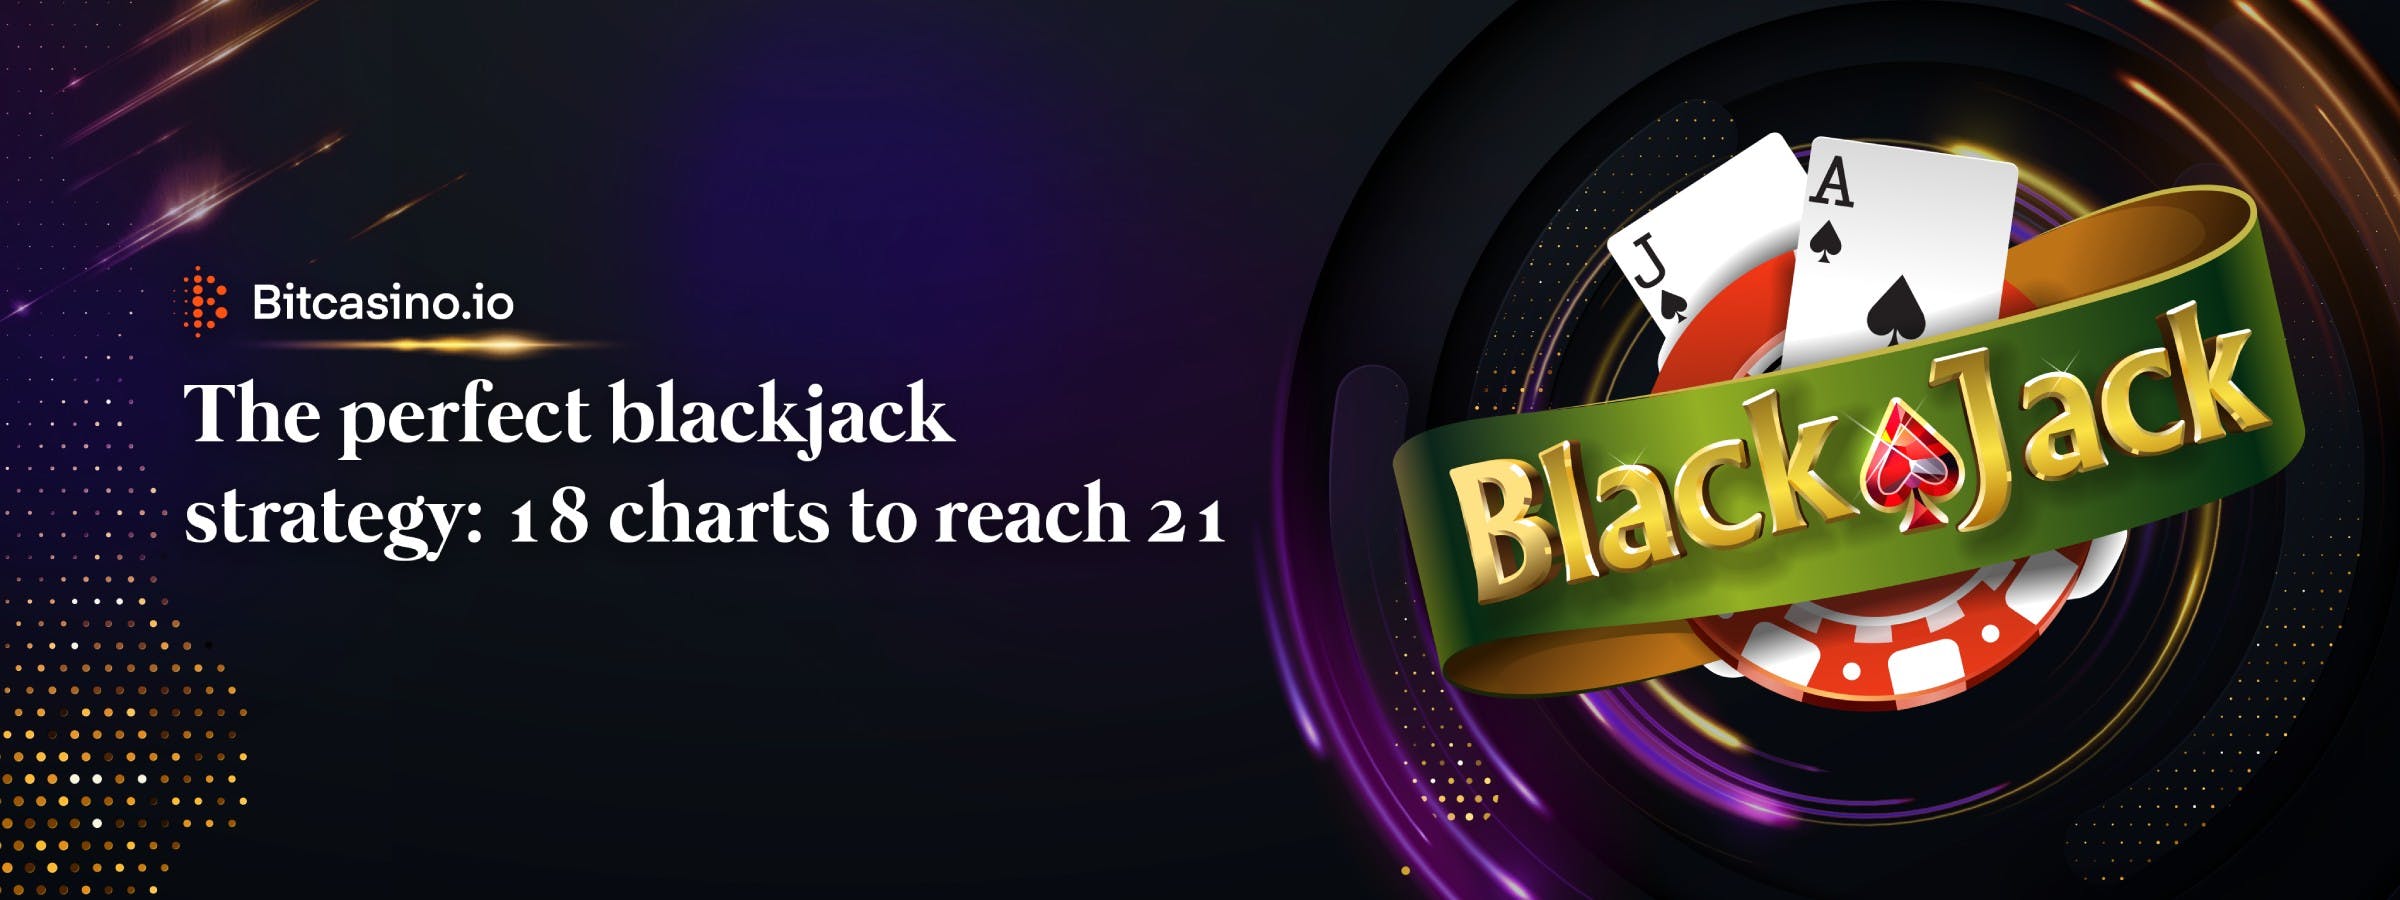 Die perfekte Blackjack-Strategie:18 Tabellen zum Erreichen von 21